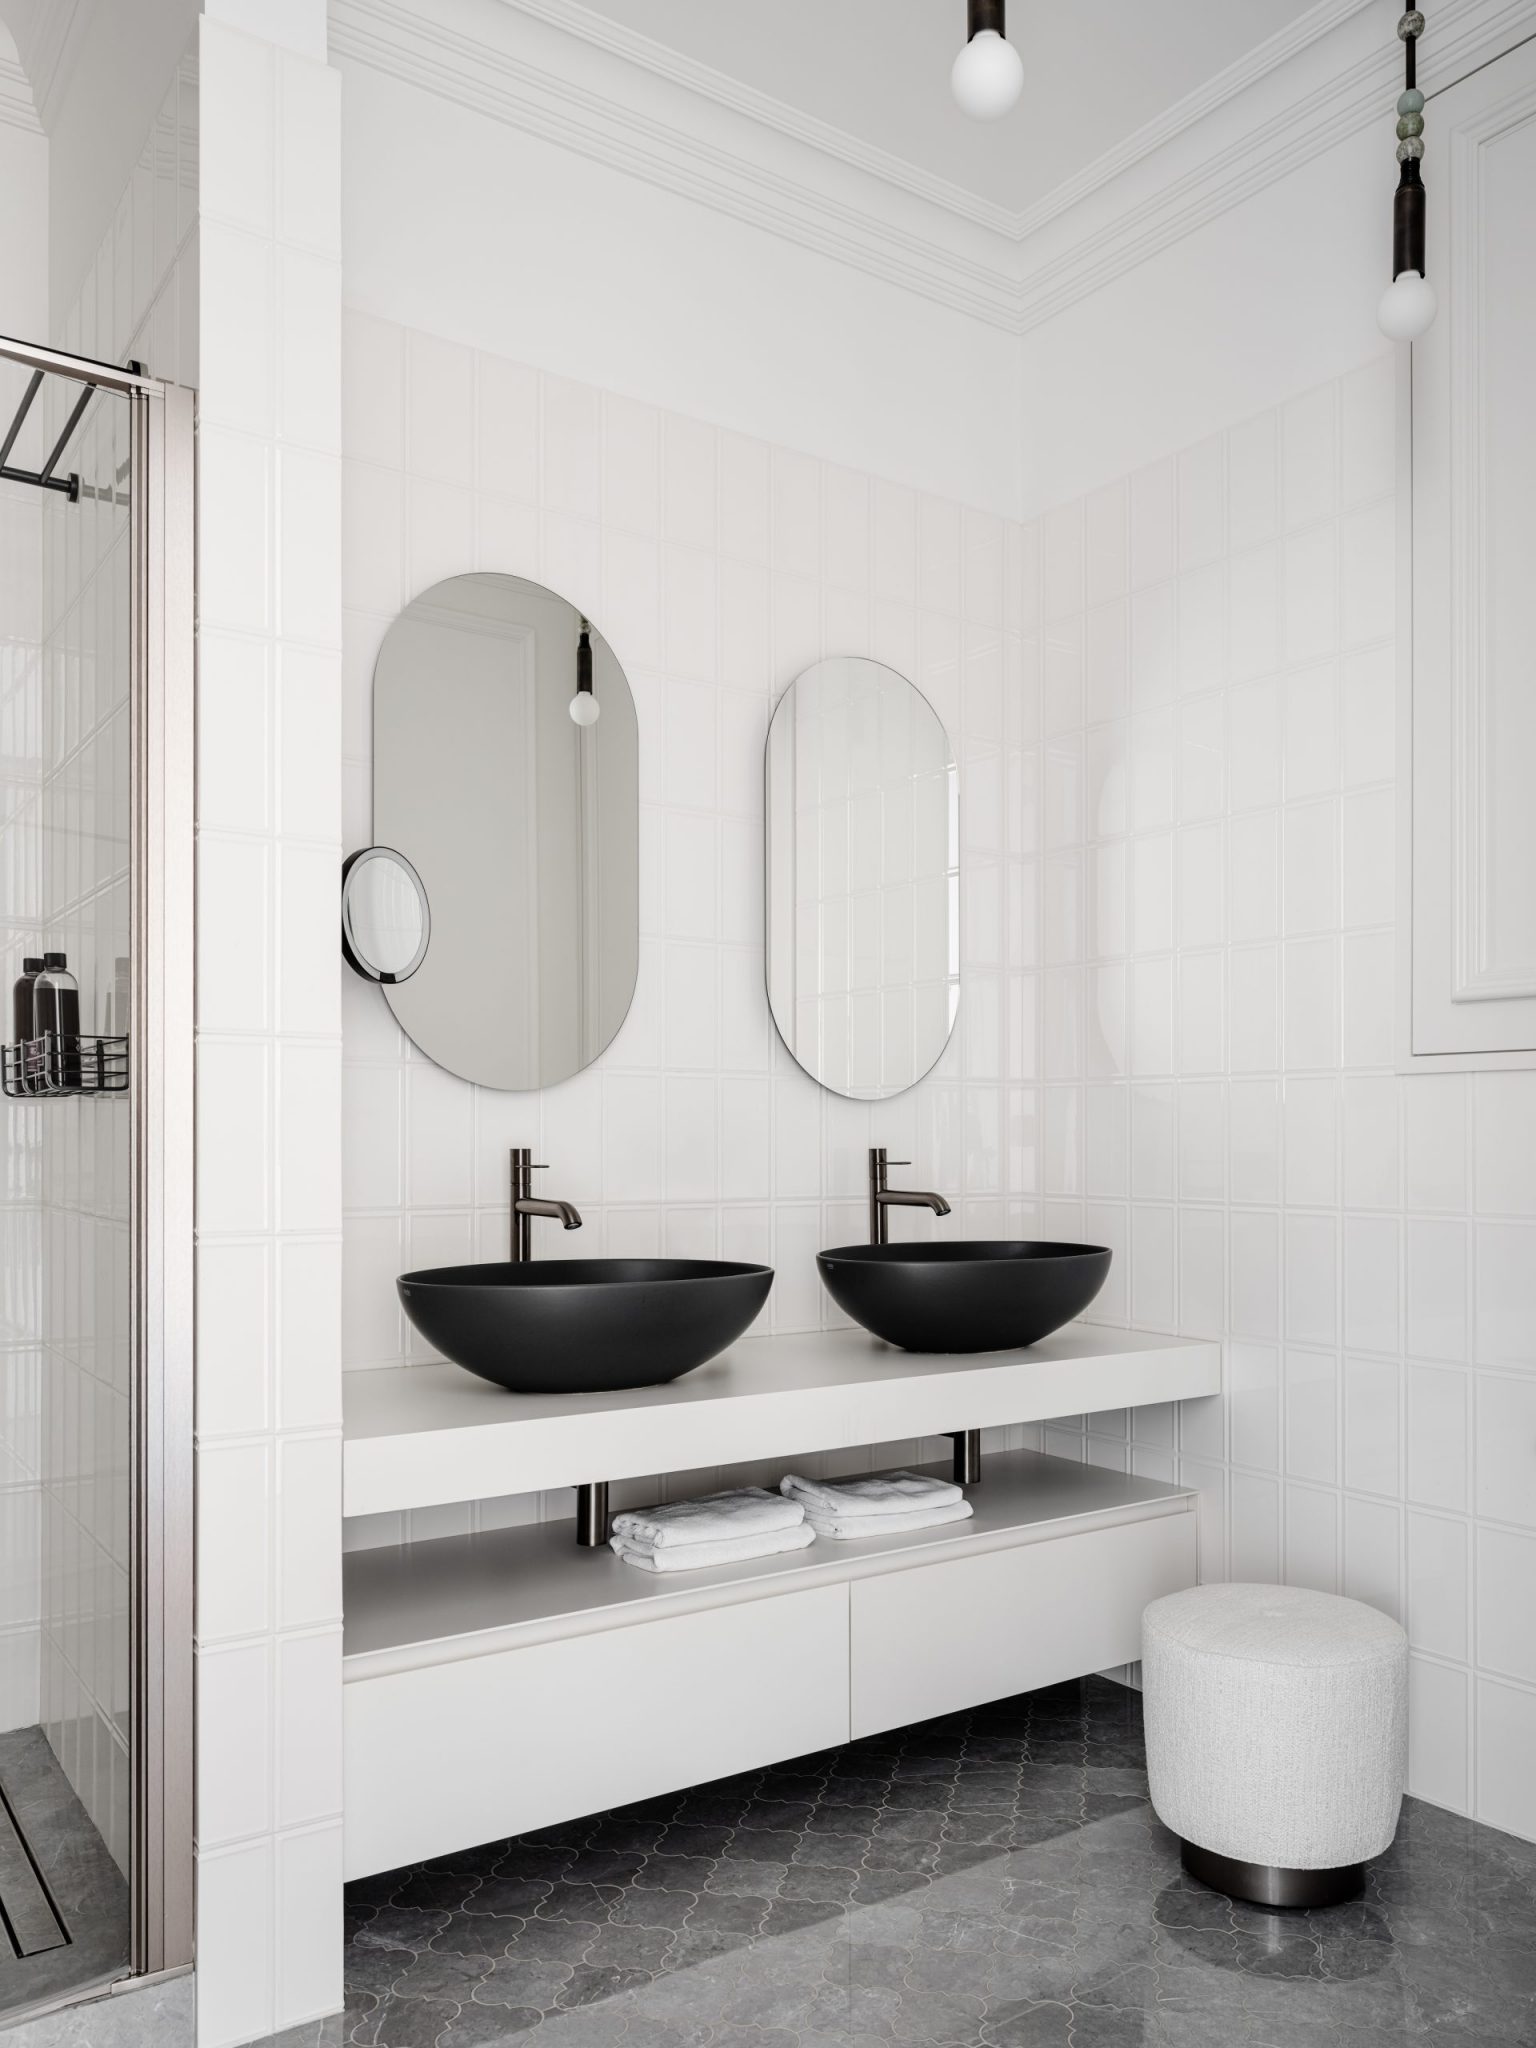 salle de bain noire et blanche design